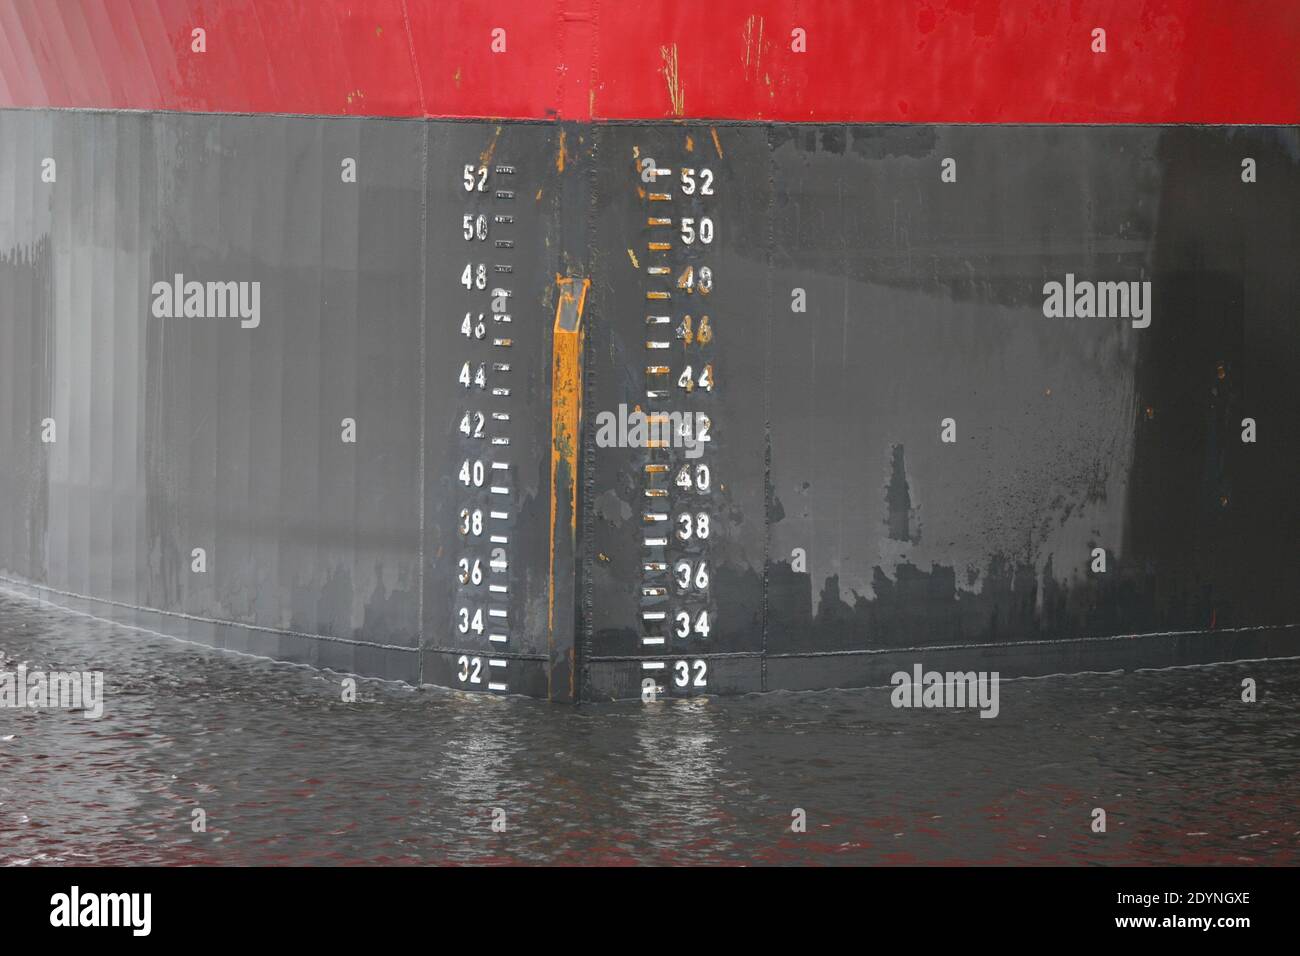 LE TIRANT d'EAU détermine la profondeur minimale de l'eau d'un navire navigation en toute sécurité Banque D'Images